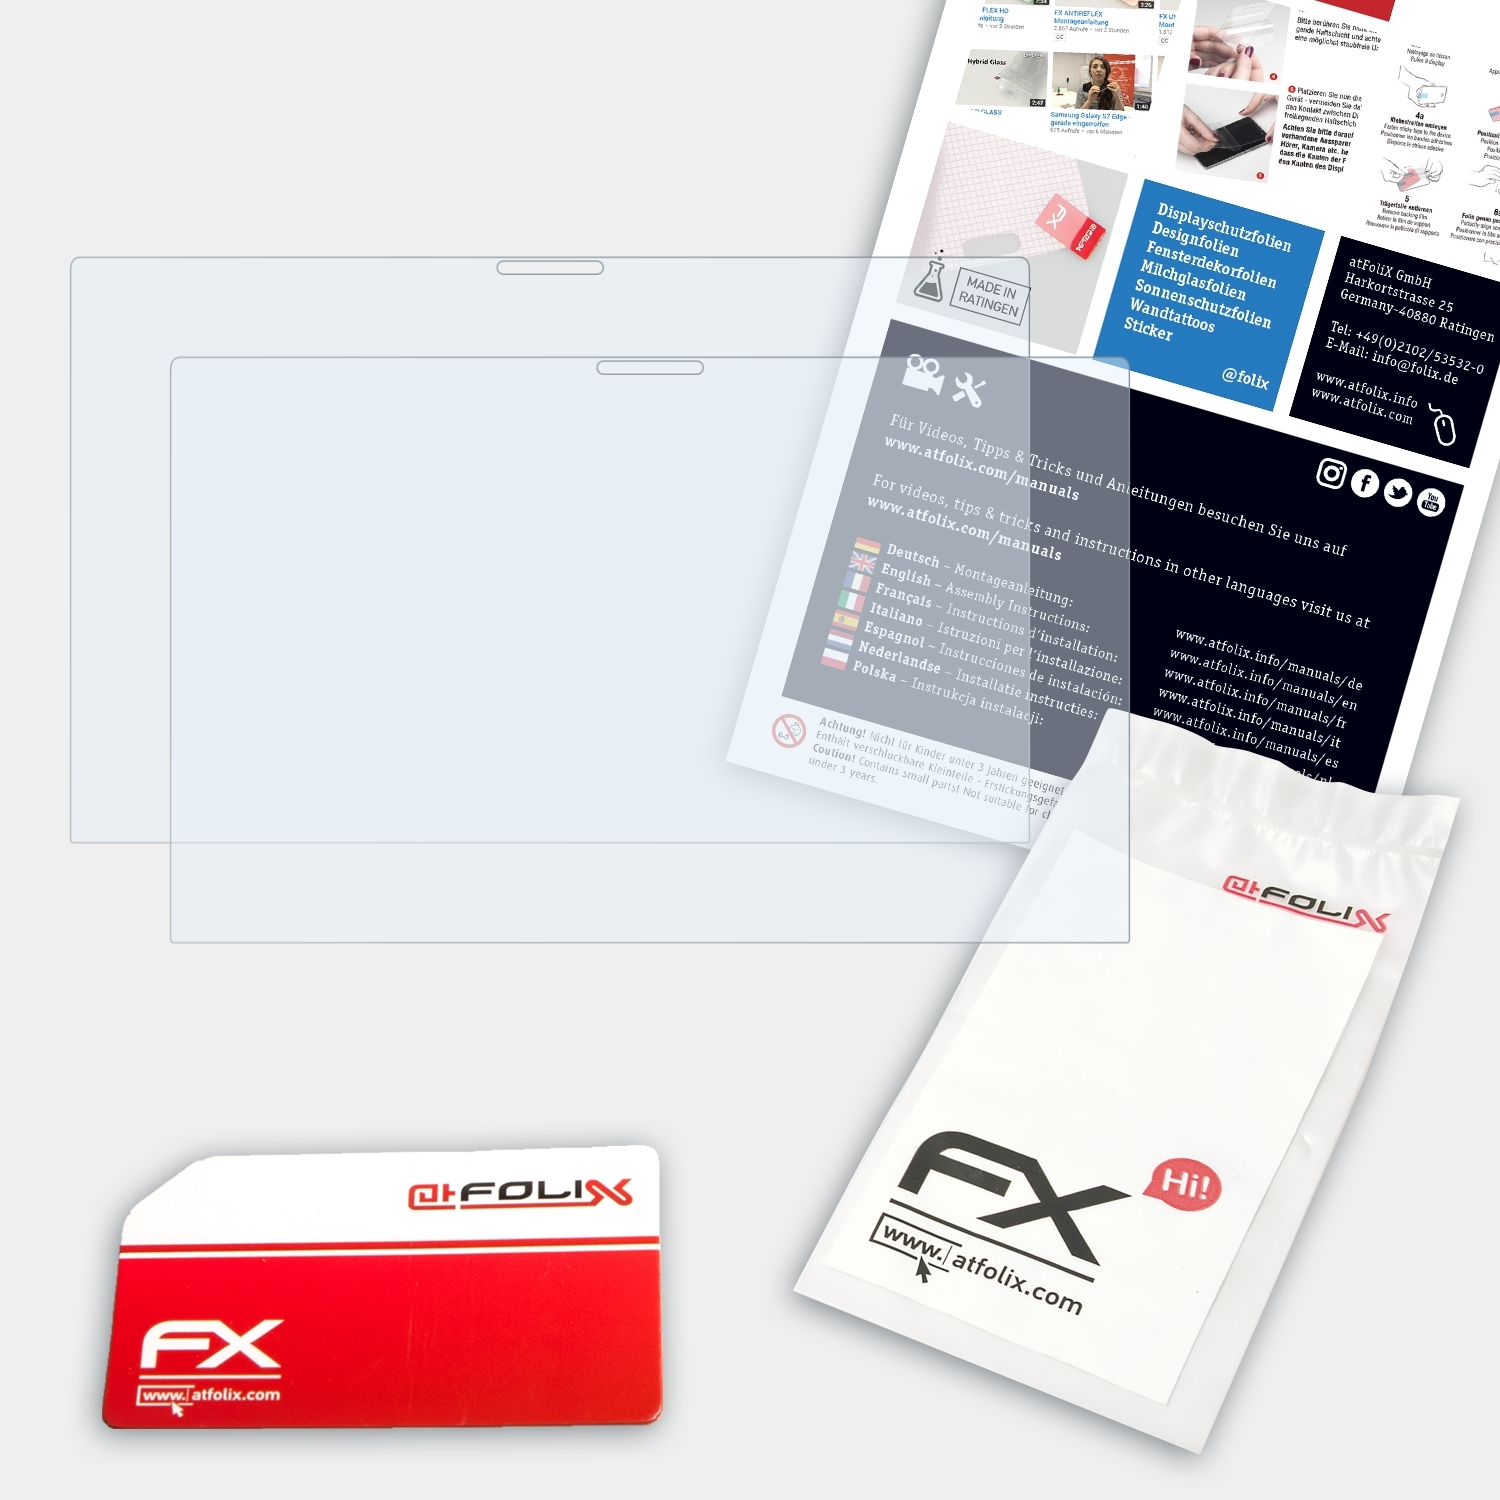 ATFOLIX Displayschutz(für 2x FX-Clear Asus Flip Zenbook 14 (UX463FL))